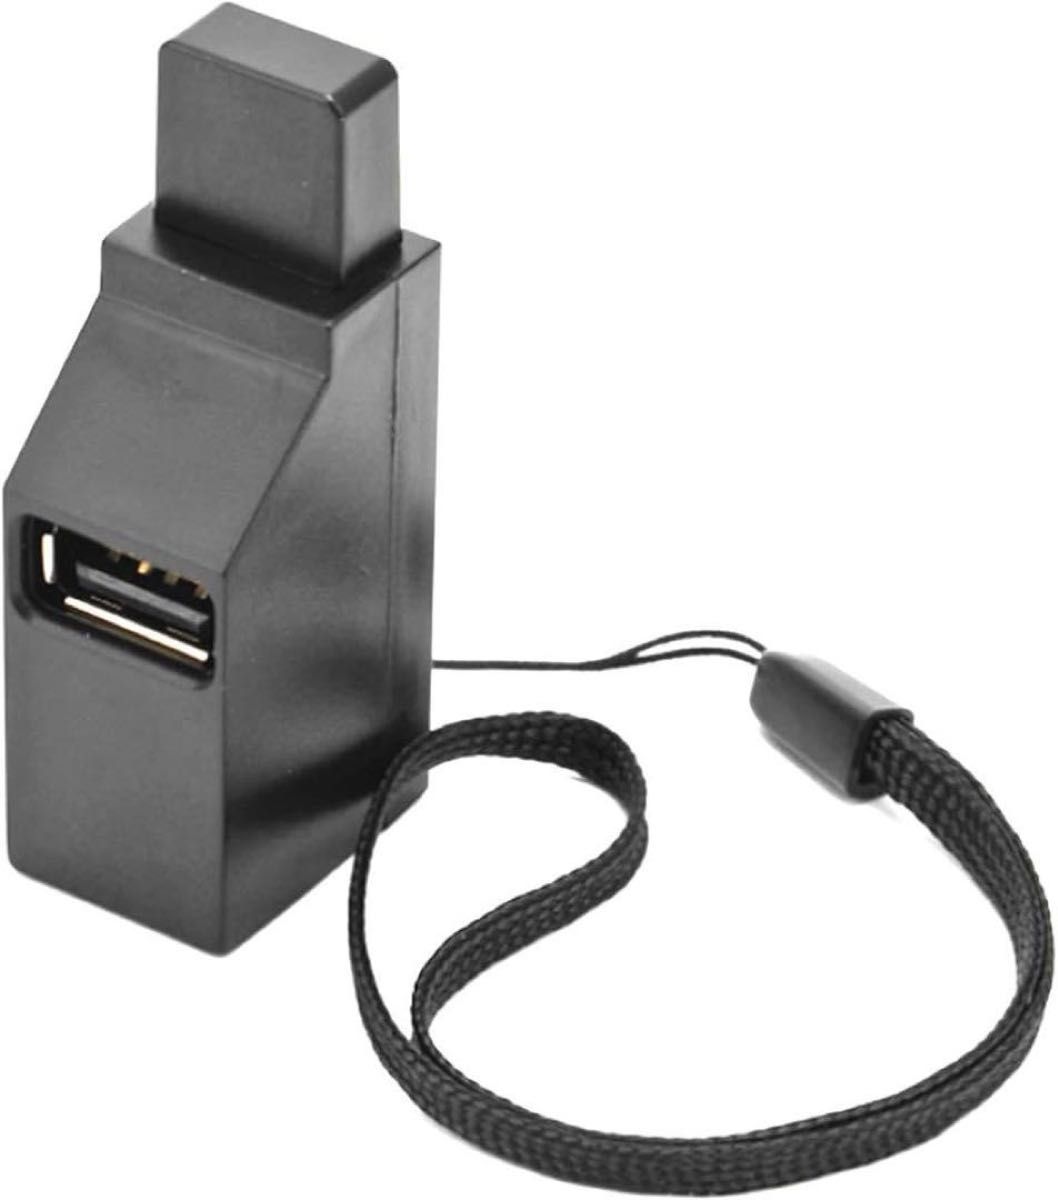 AYECEHI ミニUSBハブ 3ポート 3.0 USBハブ 高速スプリッター プラグアンドプレイ USBスプリッター アダプター